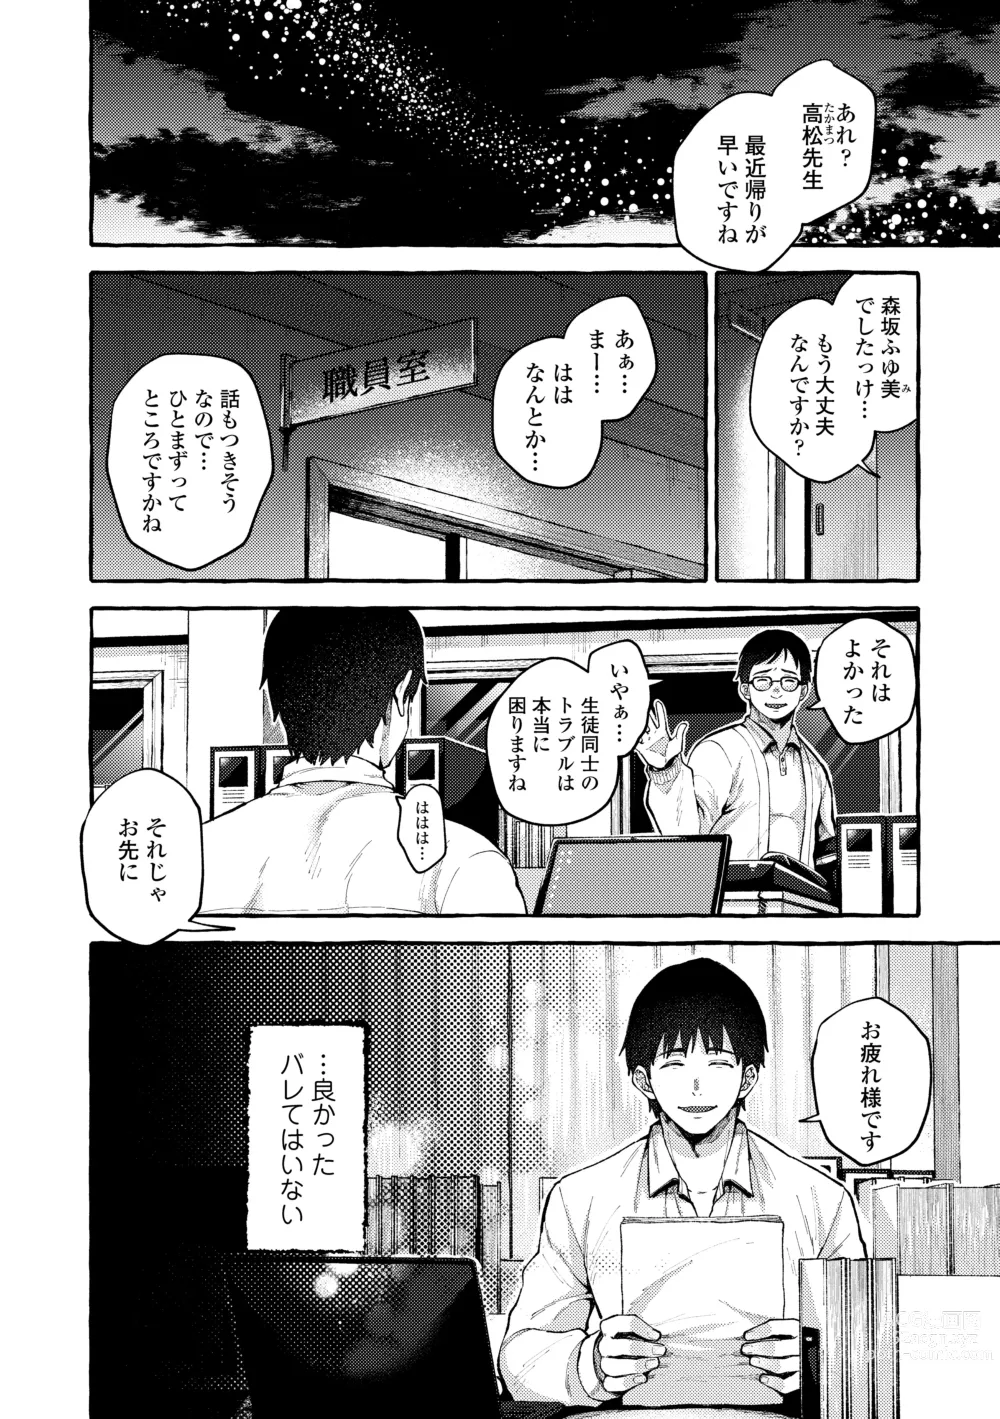 Page 6 of manga Anoko no Okiniiri